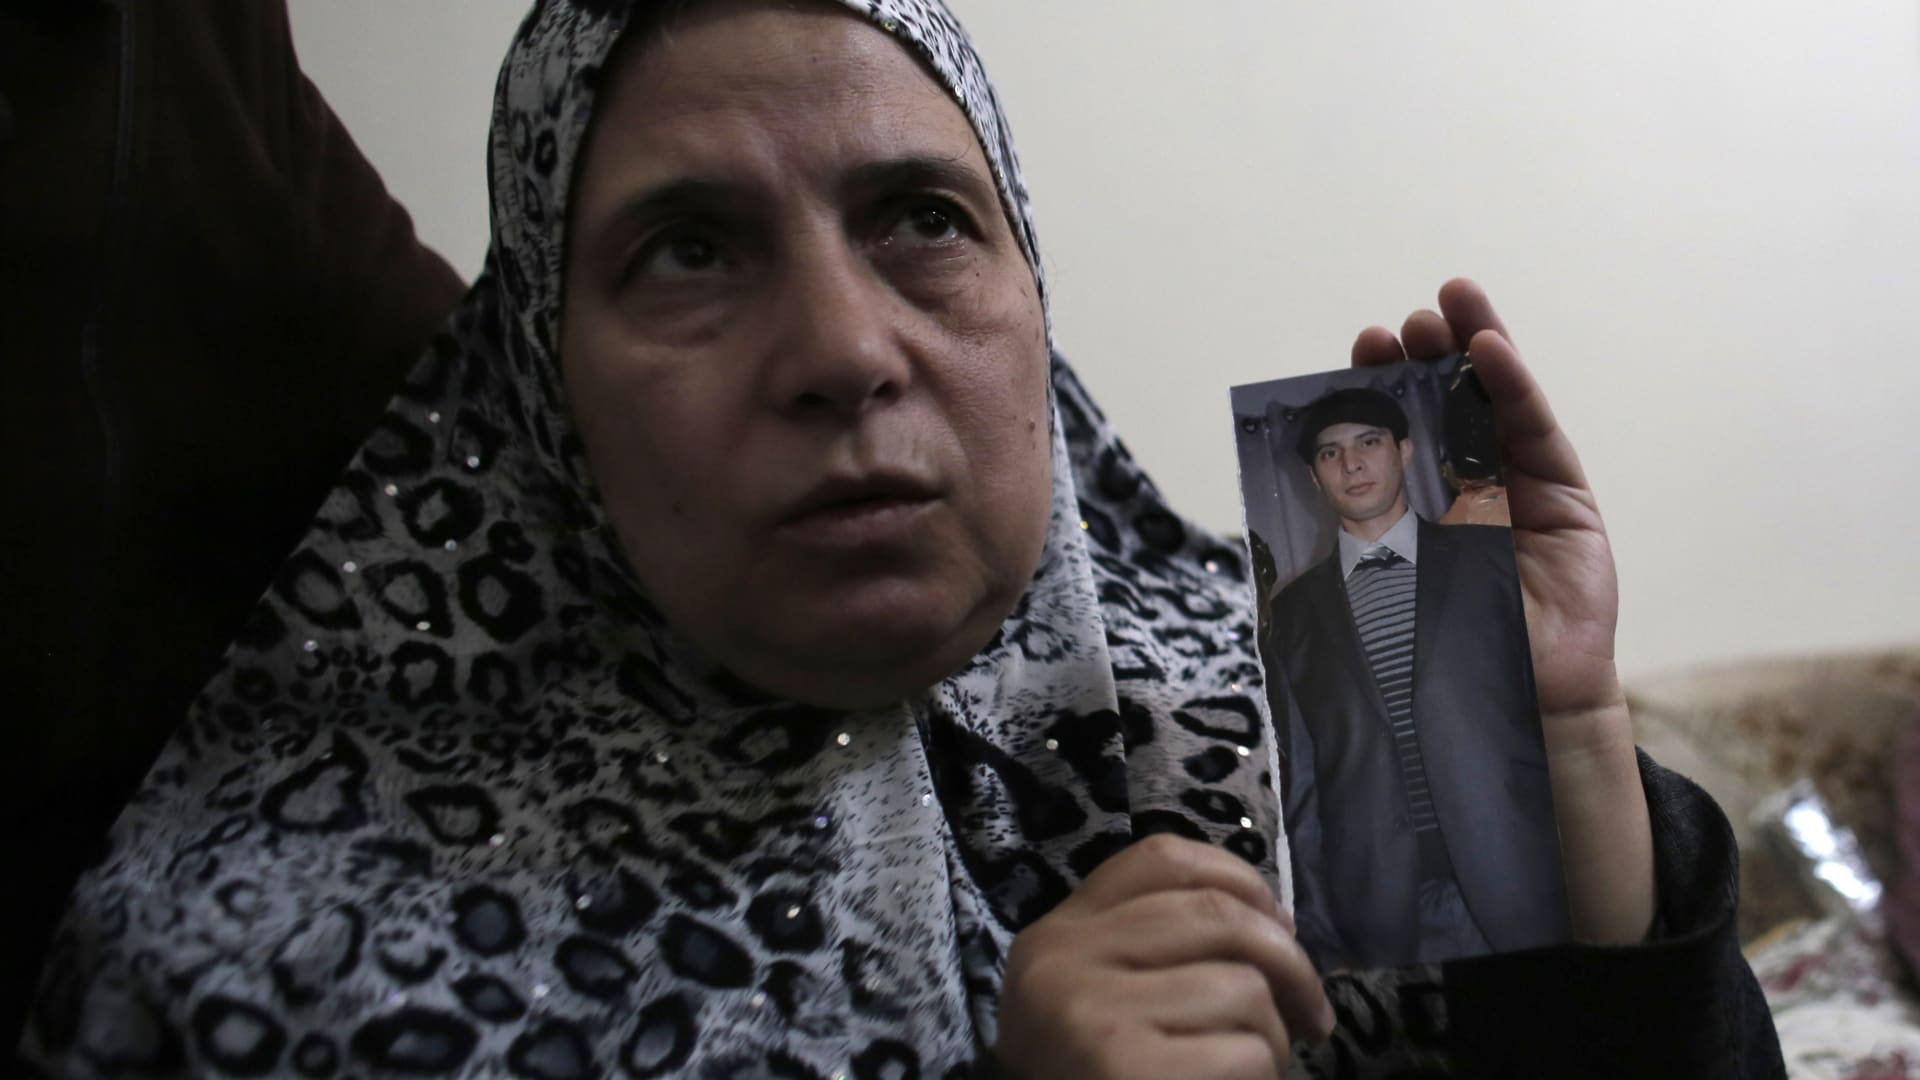 والدة الشاب الفلسطيني معتز حجازي تحمل صورته بعد مقتله صباح الخميس في مواجهات مع الجيش الإسرائيلي بالقدس.